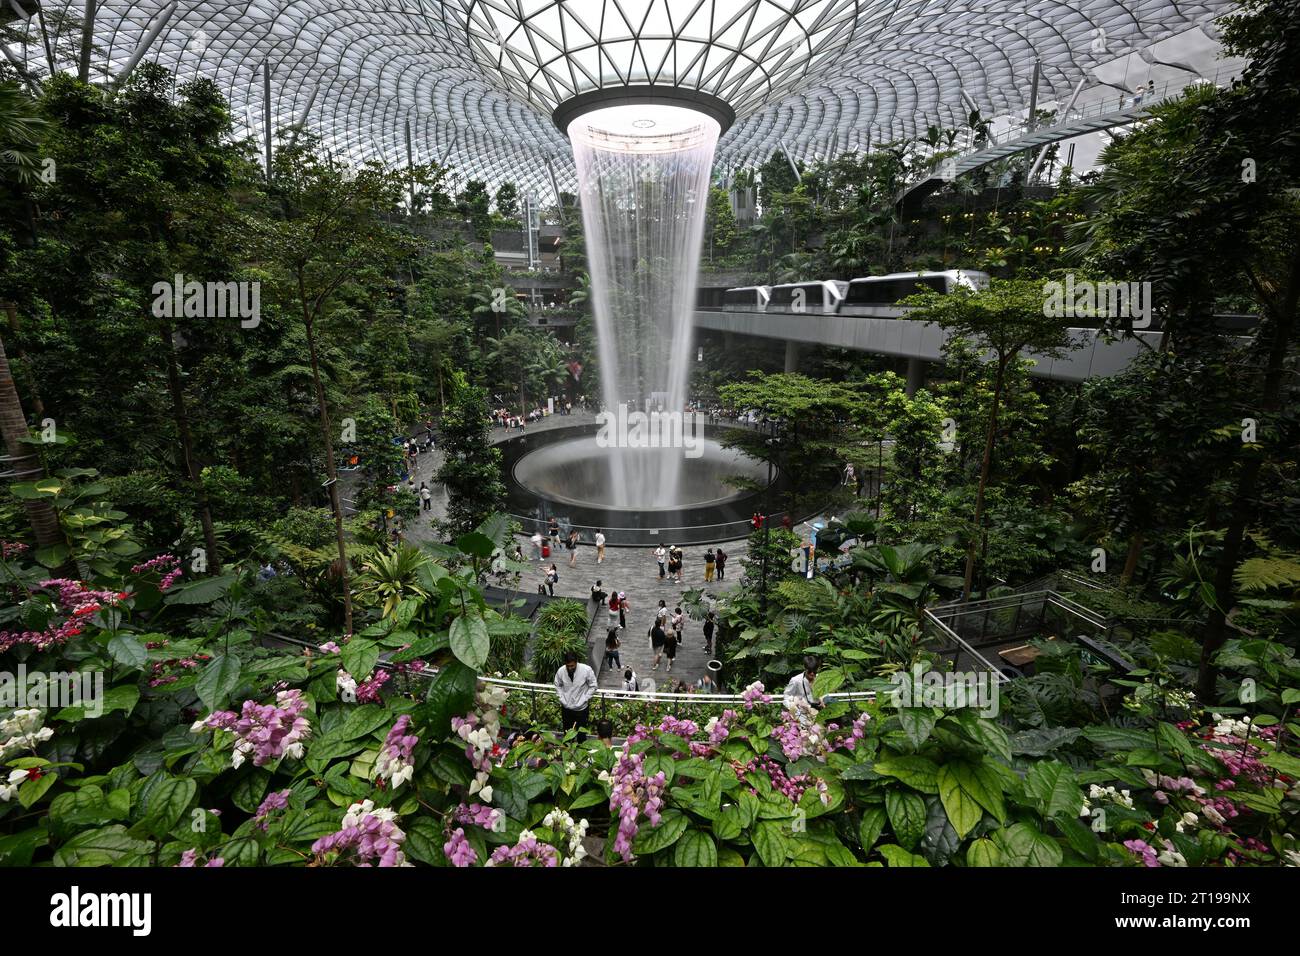 (231012) -- PÉKIN, 12 octobre 2023 (Xinhua) -- des touristes visitent la cascade artificielle intérieure Rain Vortex à l'aéroport Changi de Singapour le 7 septembre 2023. L'Initiative de démonstration Chine-Singapour (Chongqing) sur la connectivité stratégique a été lancée en 2015. Il s'agit de la troisième initiative de coopération de ce type entre la Chine et Singapour. Grâce au projet de coopération, les échanges entre Chongqing et Singapour dans les secteurs des affaires, du tourisme de loisirs et de la culture se sont approfondis ces dernières années. (Photo de Then Chih Wey/Xinhua) Banque D'Images